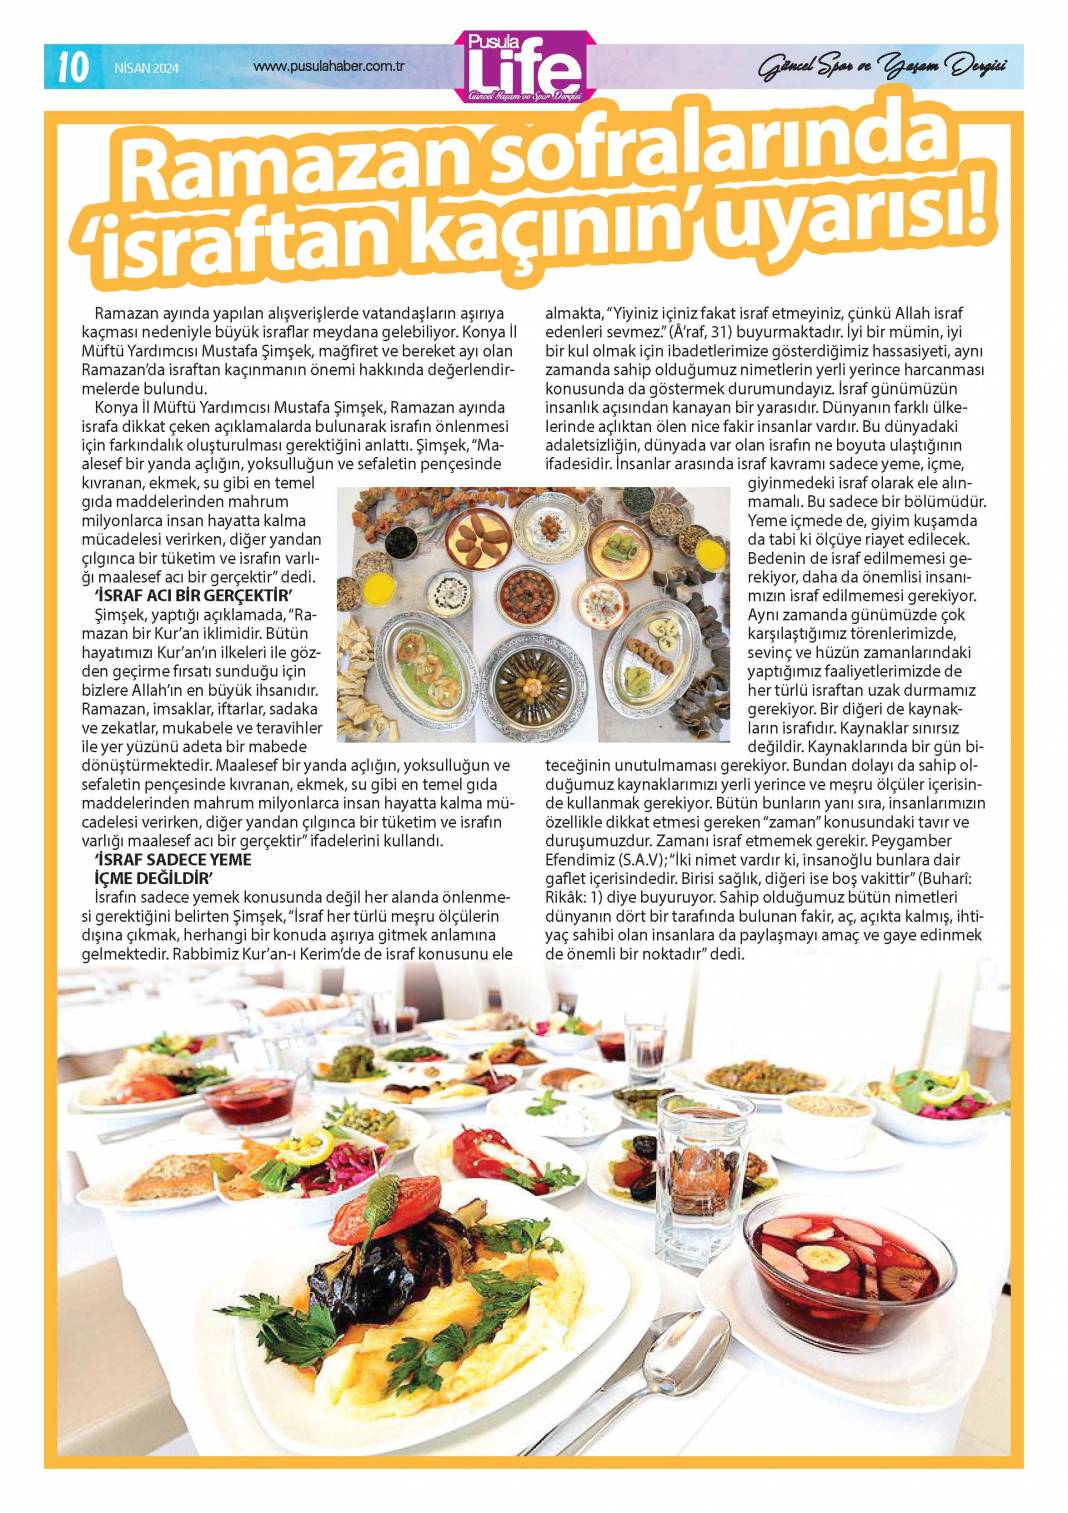 PS Life, Konya'daki Ramazan'ı yansıttı 10